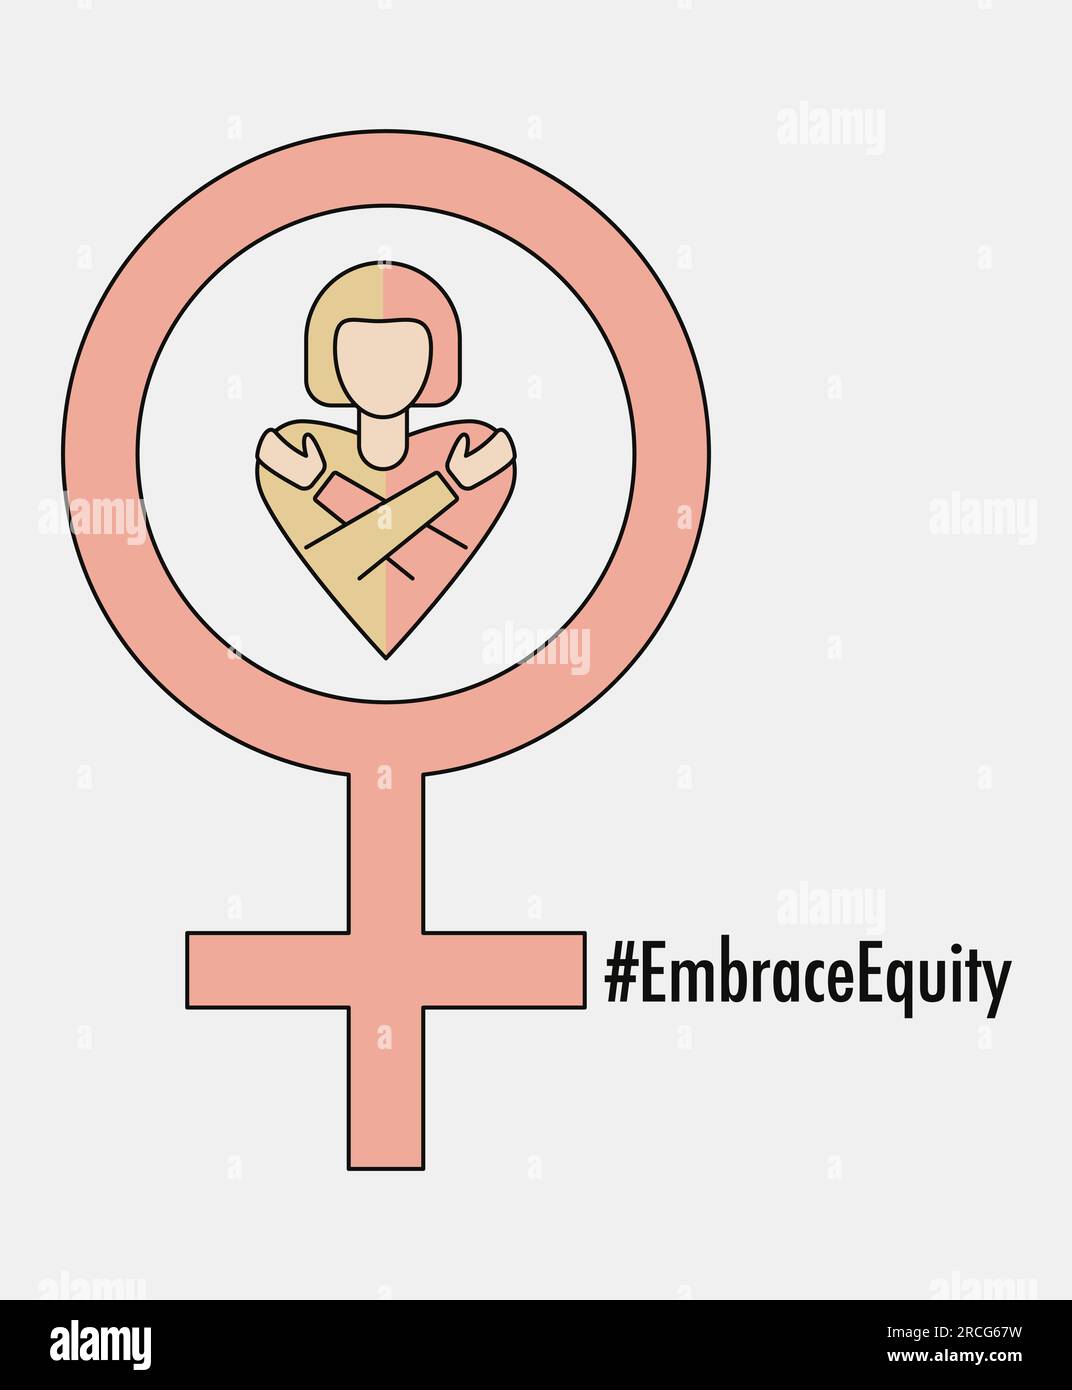 Journée internationale de la femme 2023 #EmbraceEquity donner à l'équité une large adhésion. Adoptez l'équité. Signe de sexe féminin illustration vectorielle. Isol. Élément de conception Illustration de Vecteur